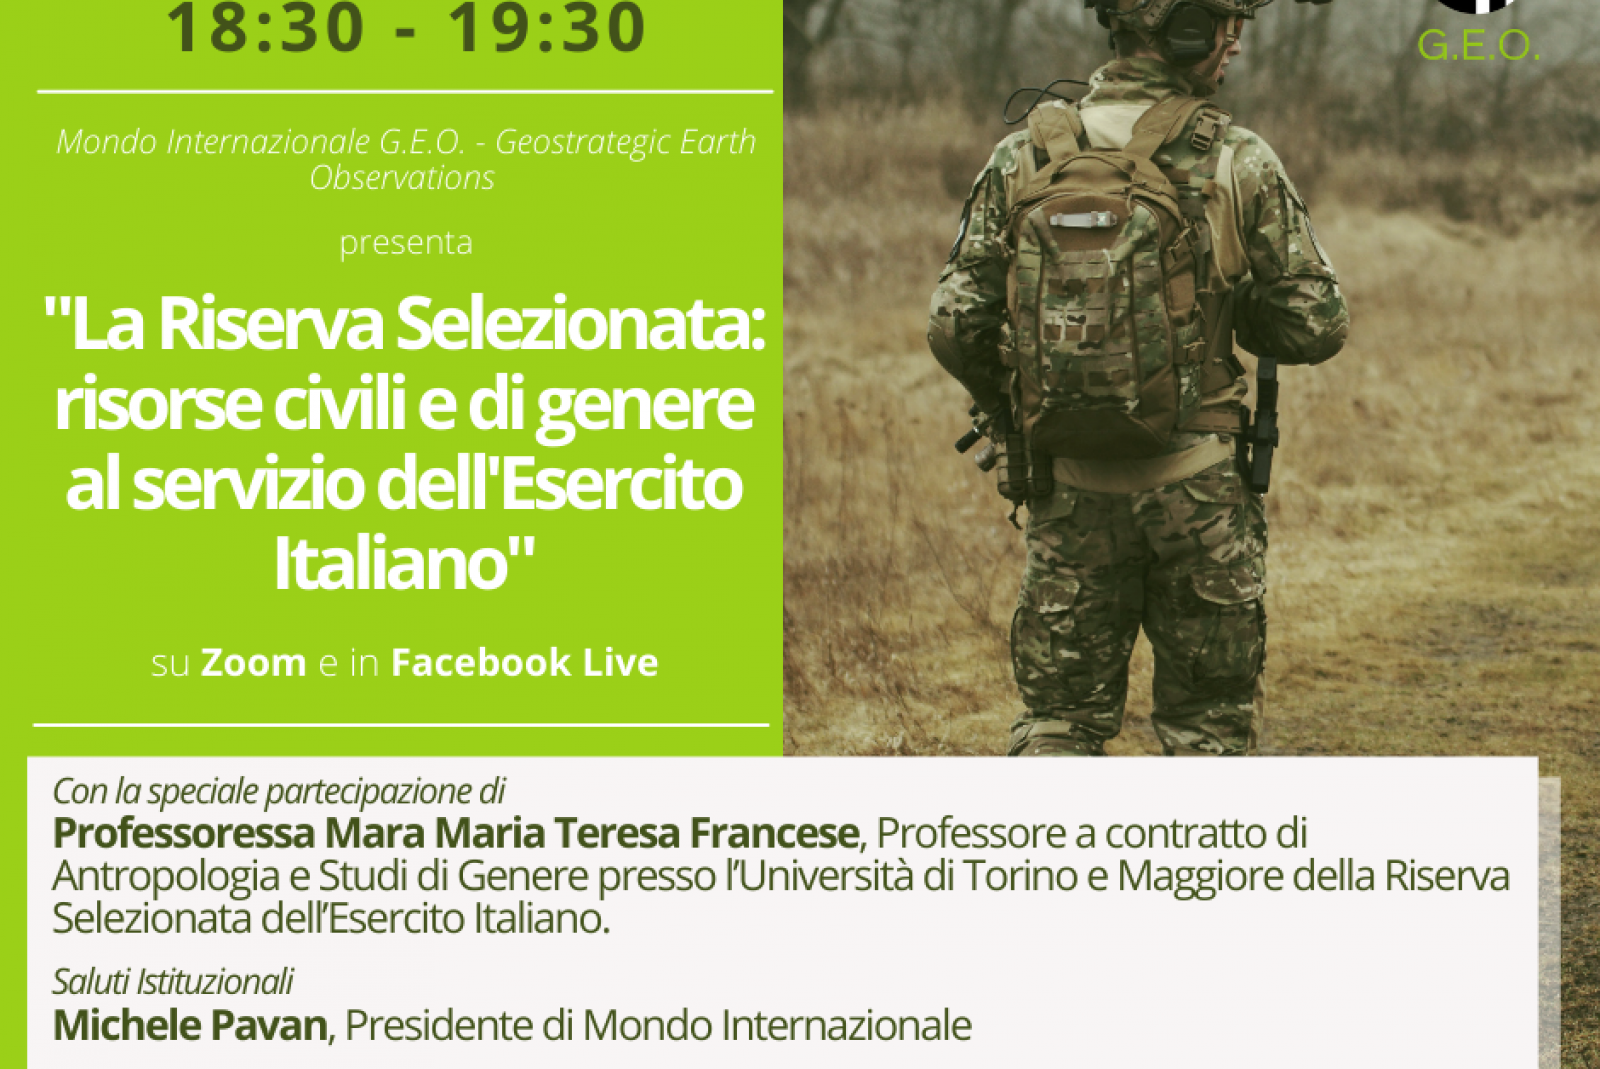 La Riserva Selezionata: risorse civili e di genere al servizio dell'Esercito Italiano